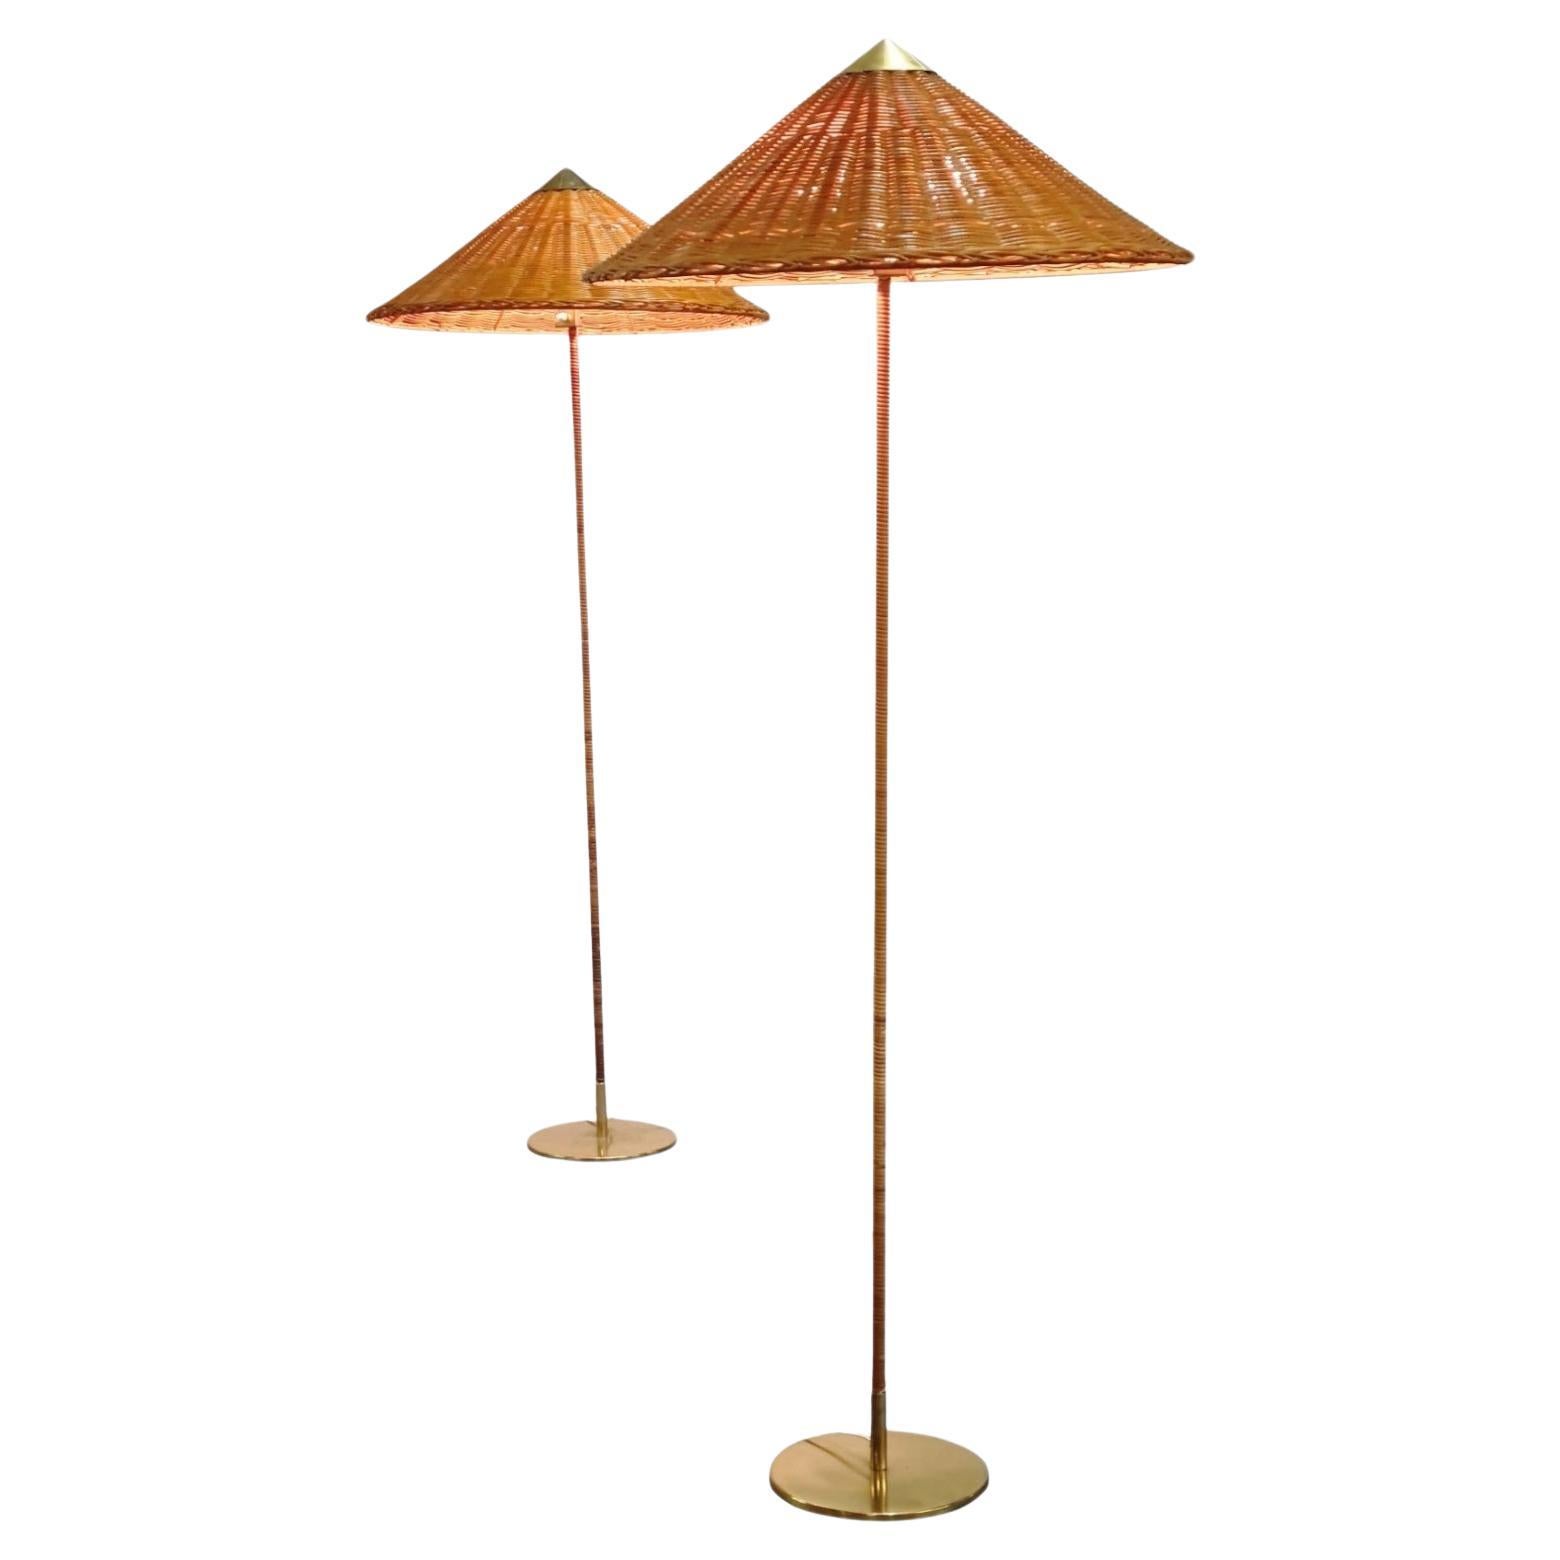 Paar Stehlampen von Paavo Tynell, Modell 9602 „Chinesischer Hut“, Idman, 1950er Jahre